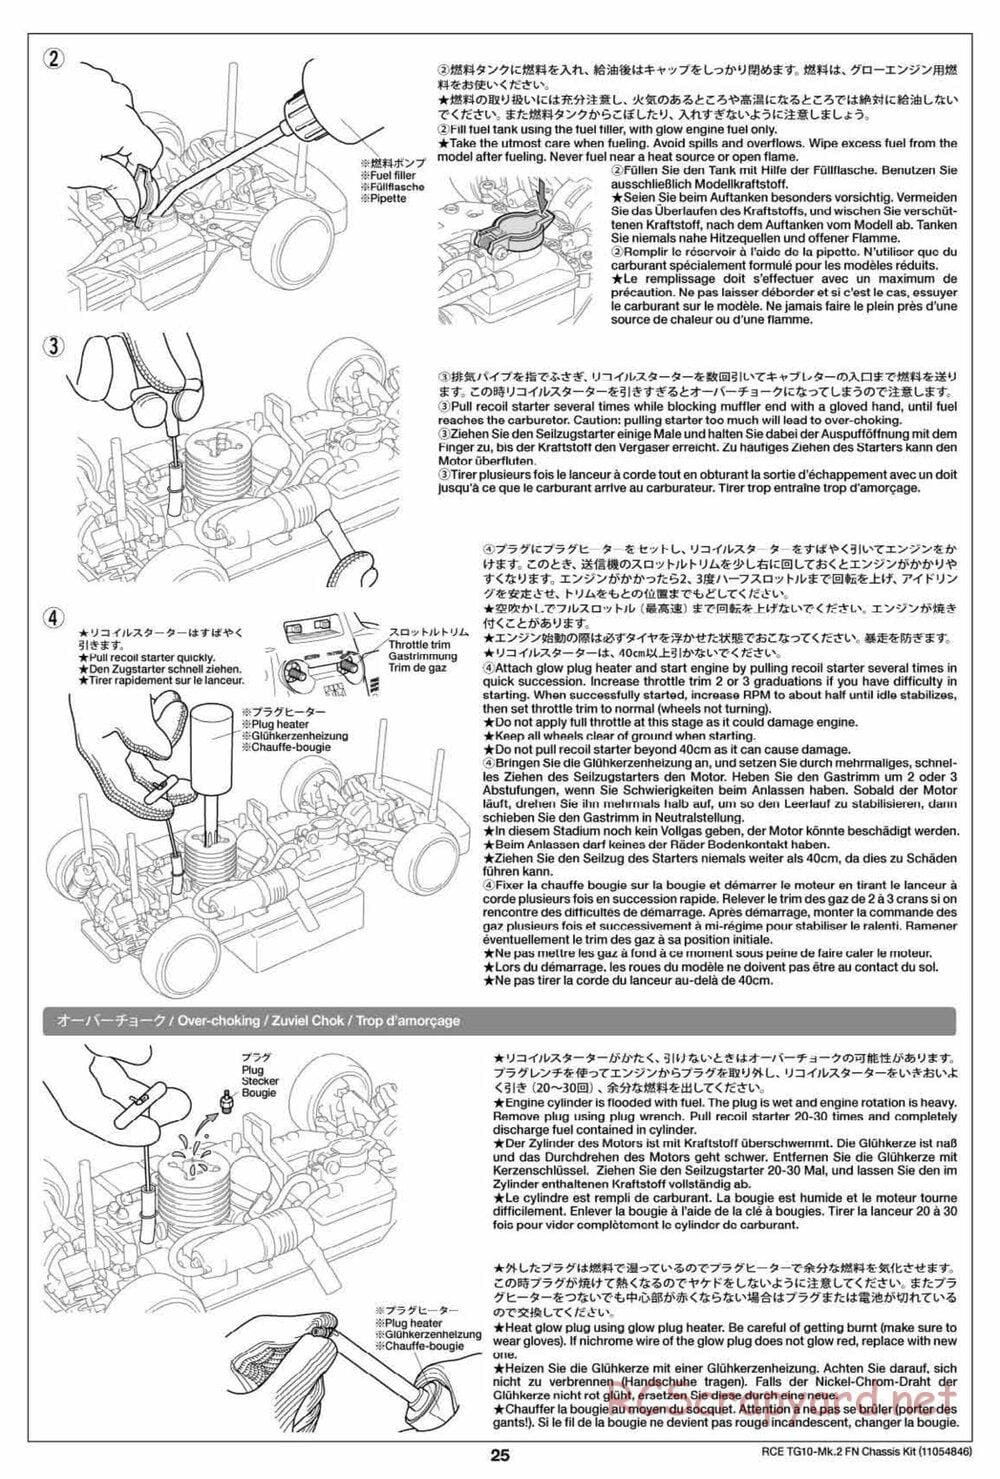 Tamiya - TG10 Mk.2 FN Chassis - Manual - Page 25